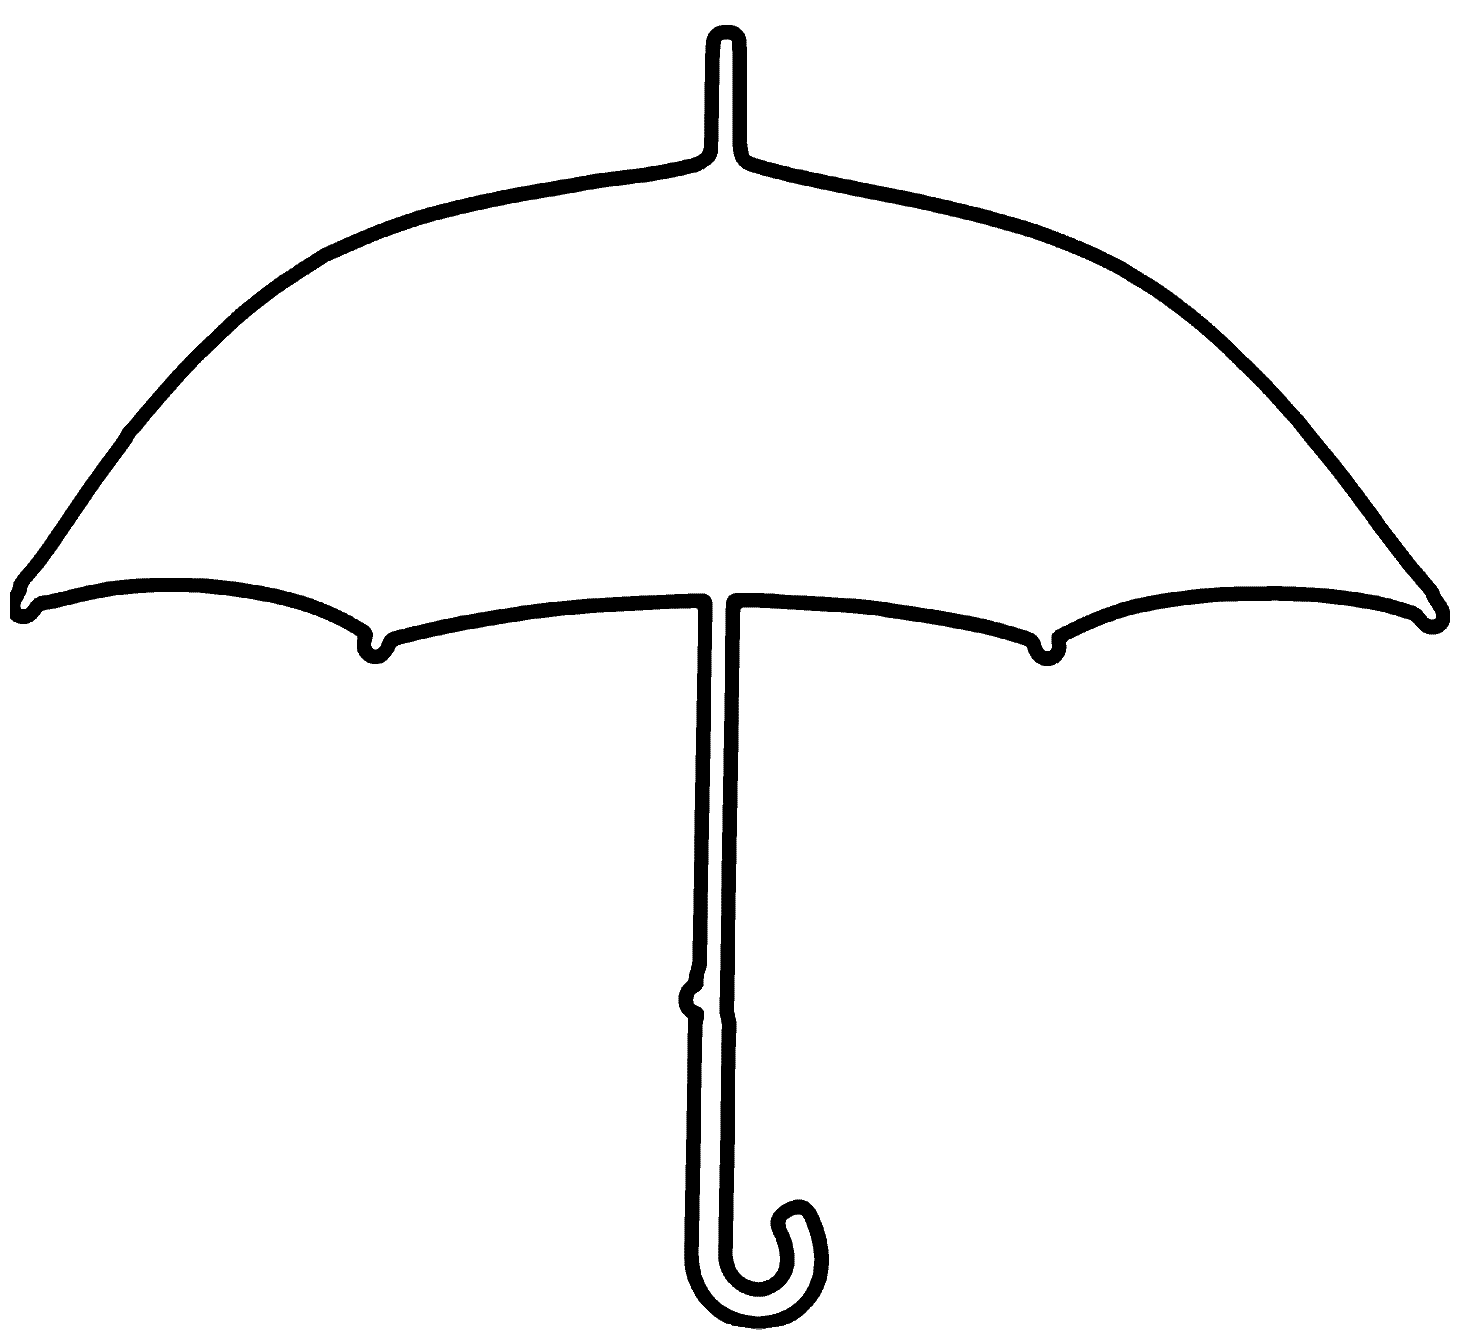 Clip art of an umbrella clipart 2 clipartwiz